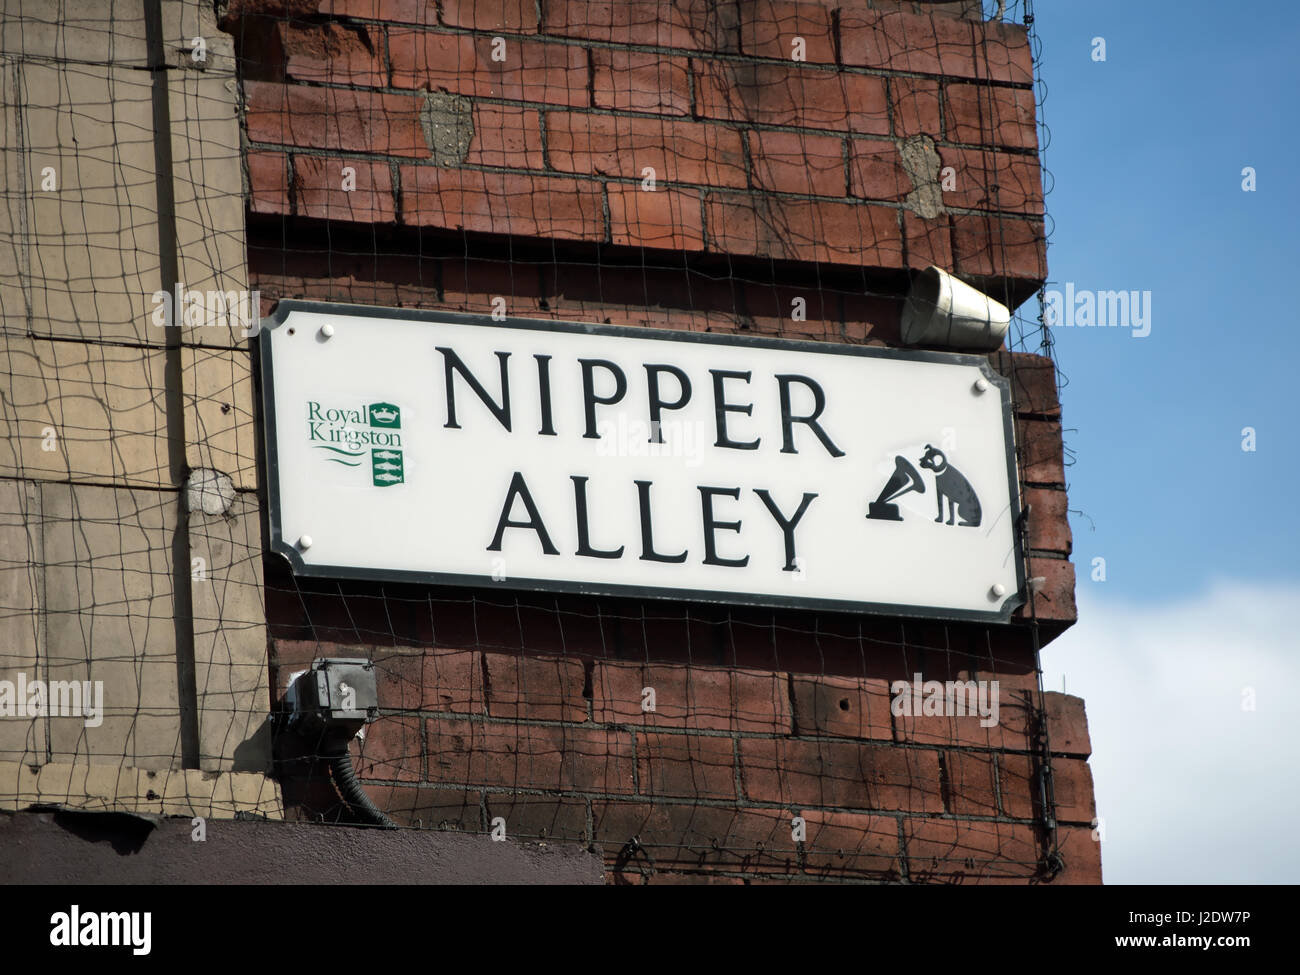 El nombre de la calle para firmar nipper alley, denominado para el perro utilizada en el logotipo de sus maestros de voz o hmv, compañía discográfica, Kingston, Surrey, Inglaterra Foto de stock